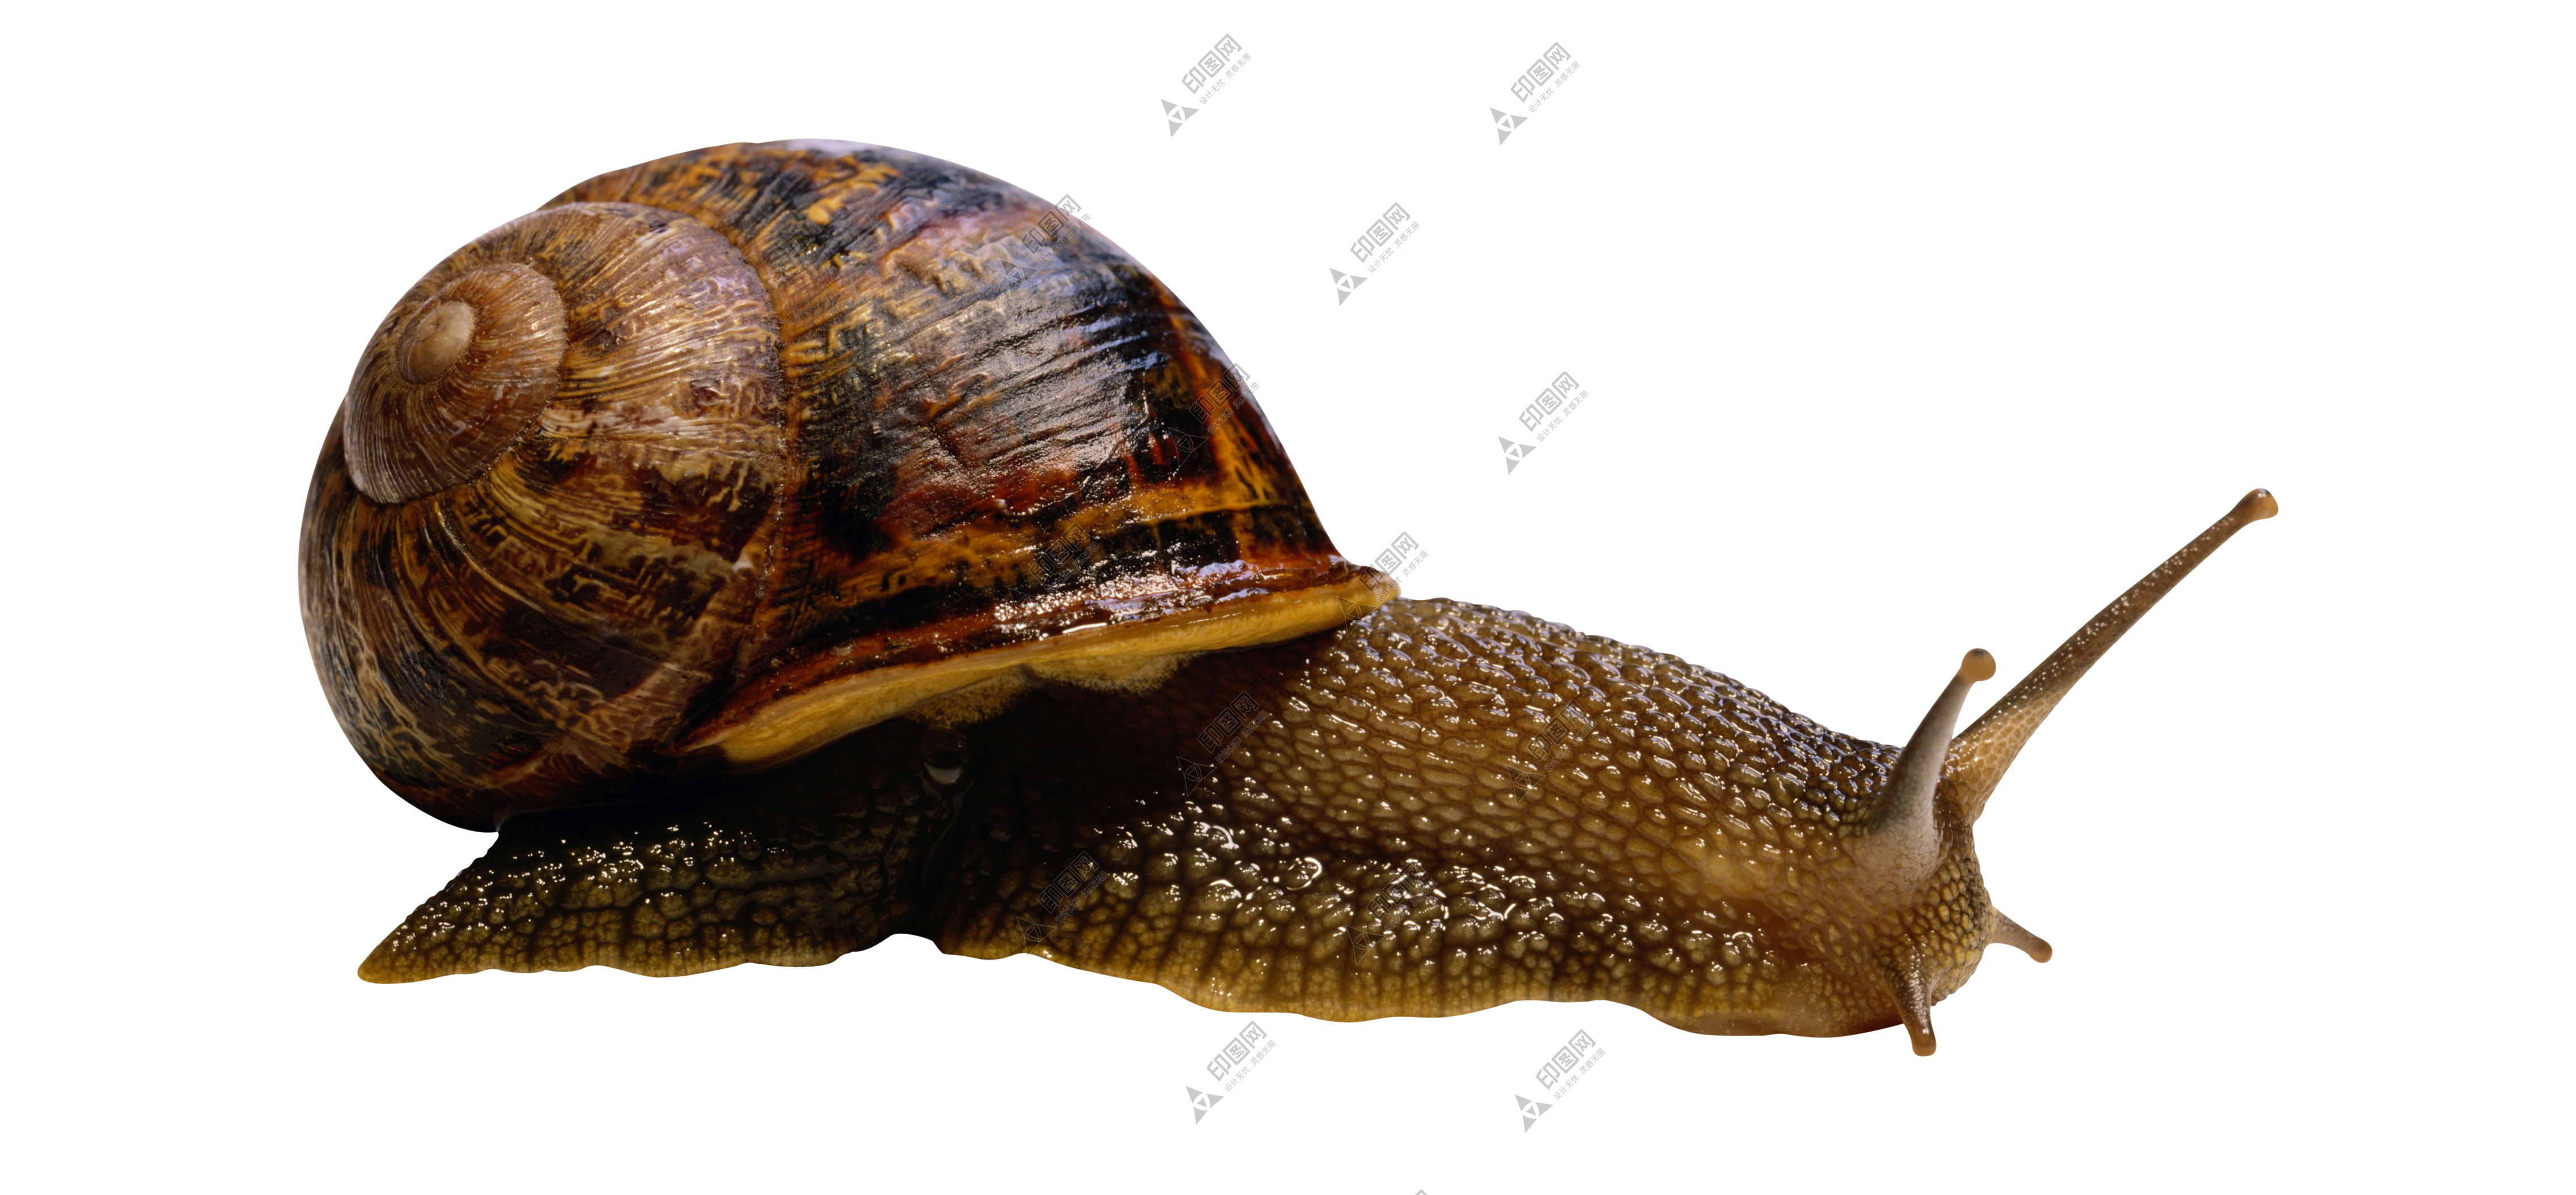 蜗牛_蜗娄牛_snails_snails